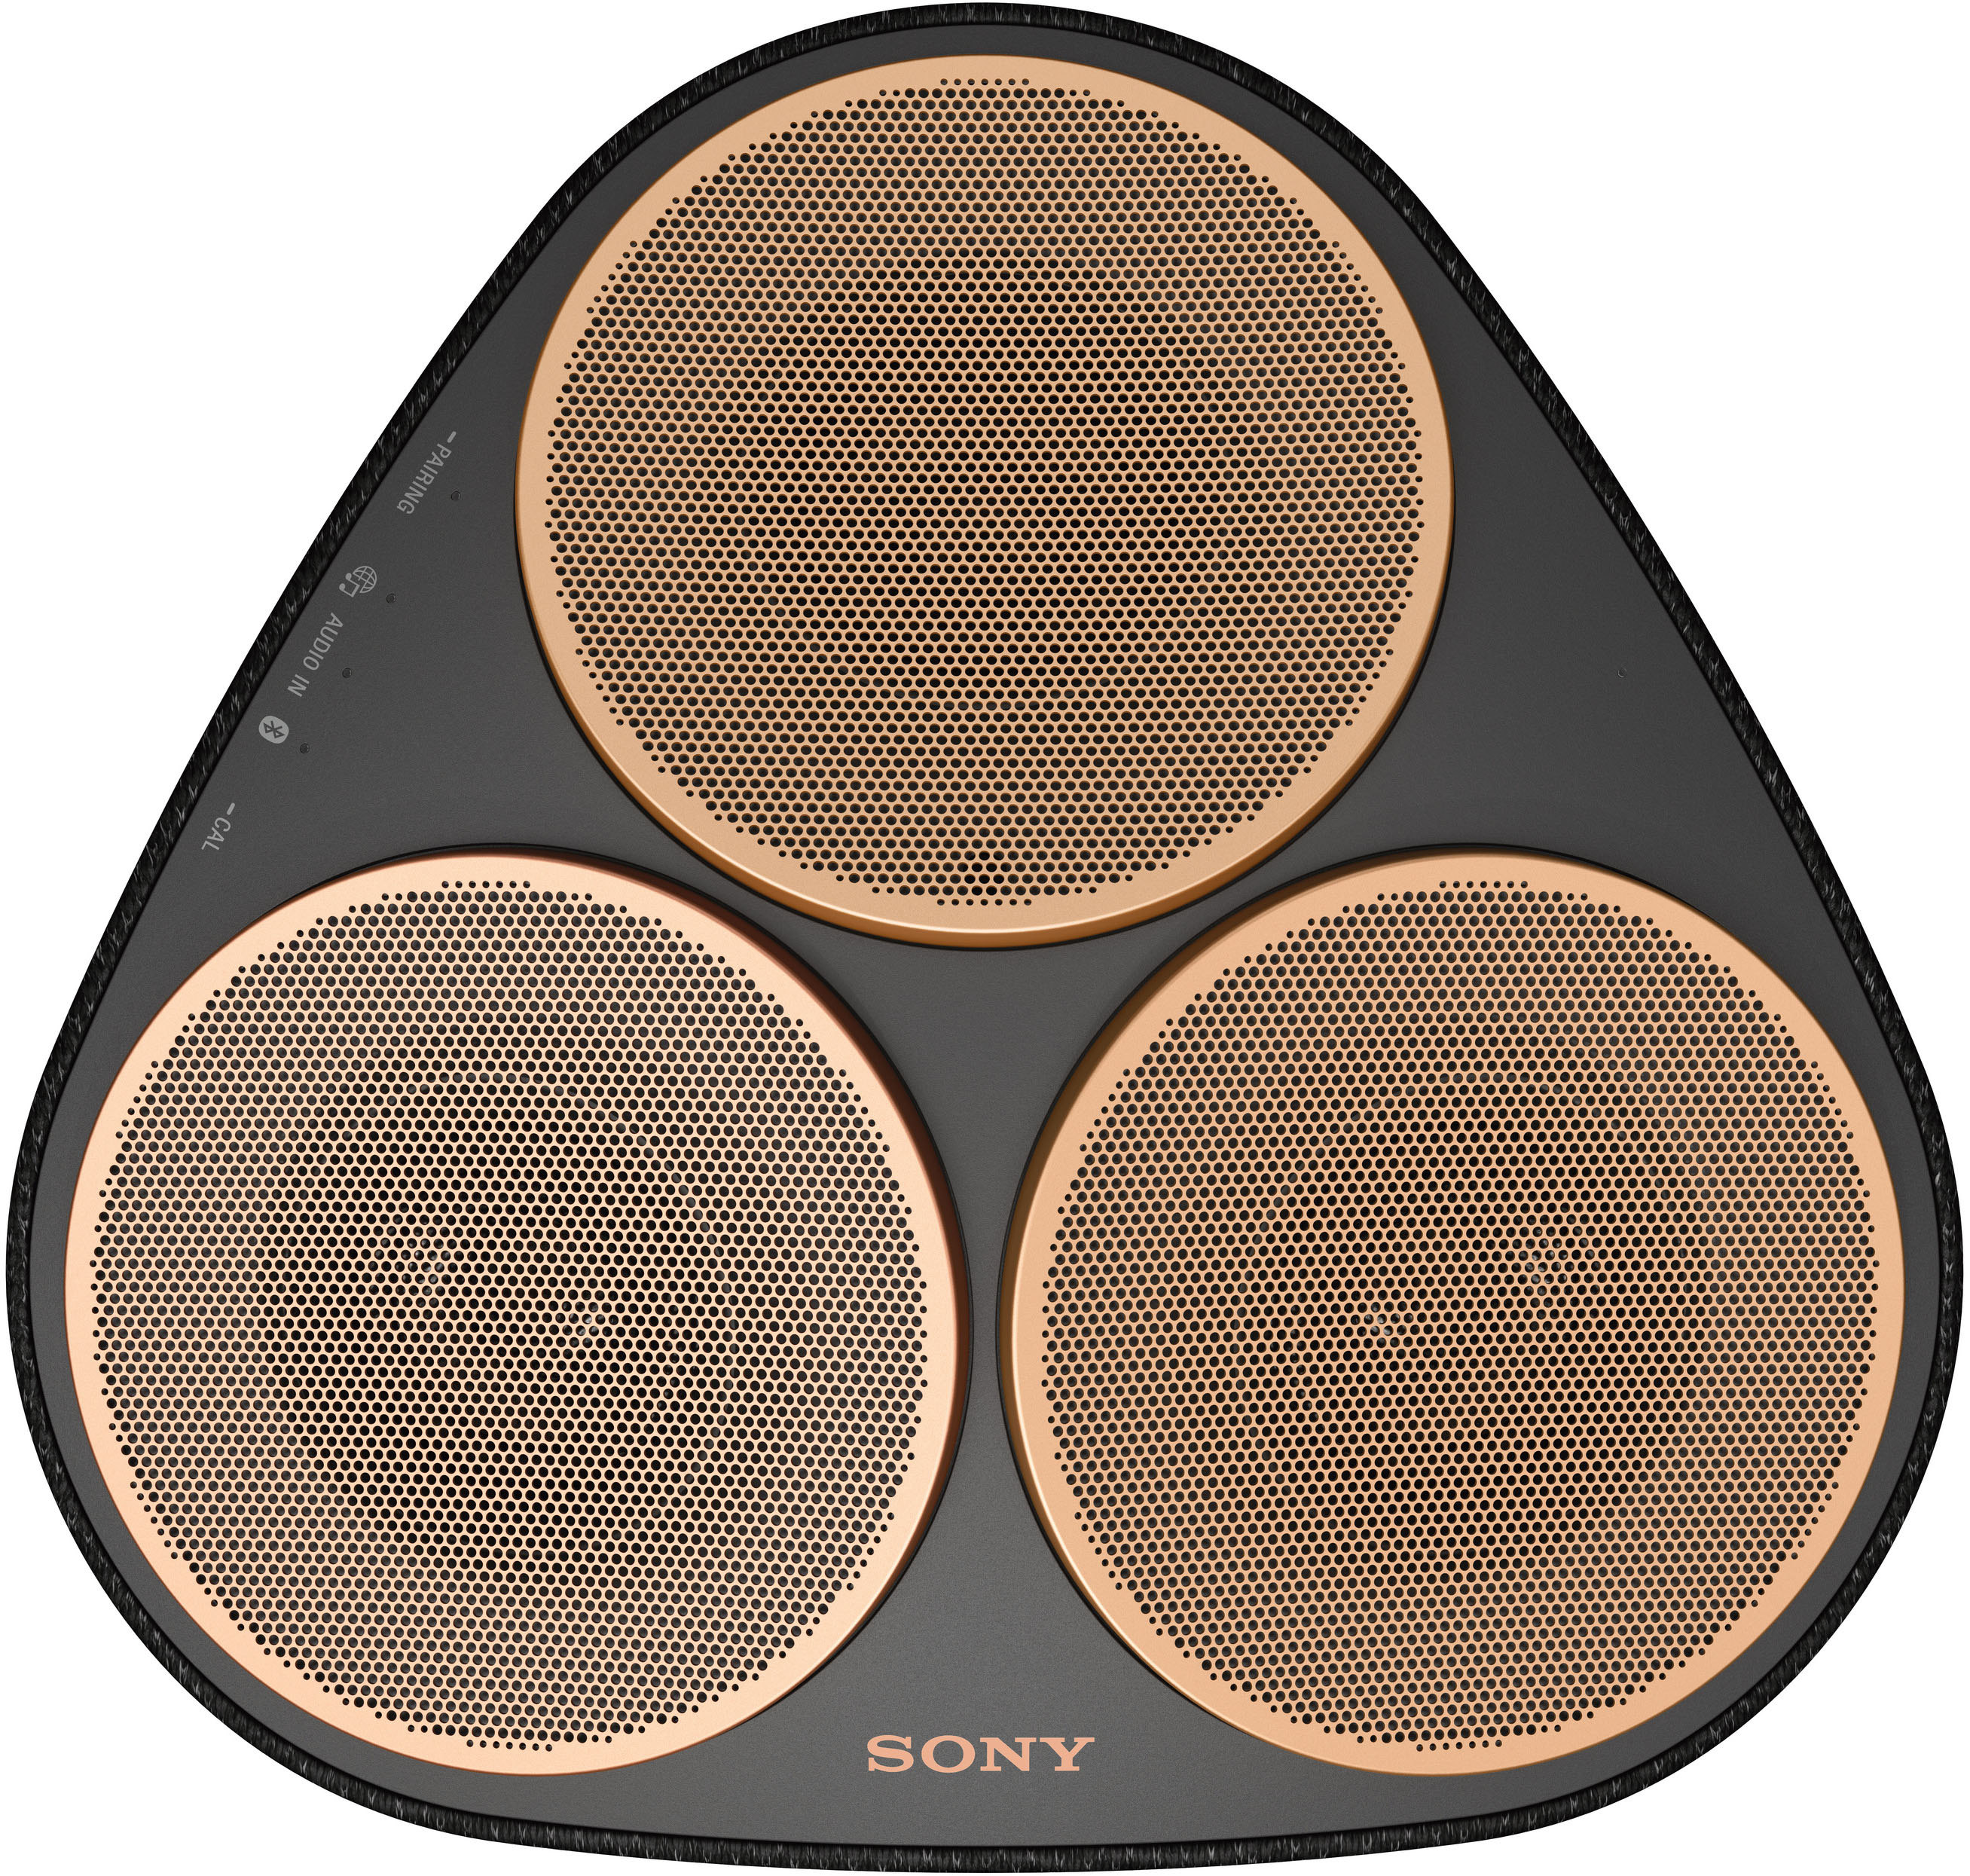 Best Buy: Sony SRSRA5000 Wi-Fi Enabled 360 Reality Audio